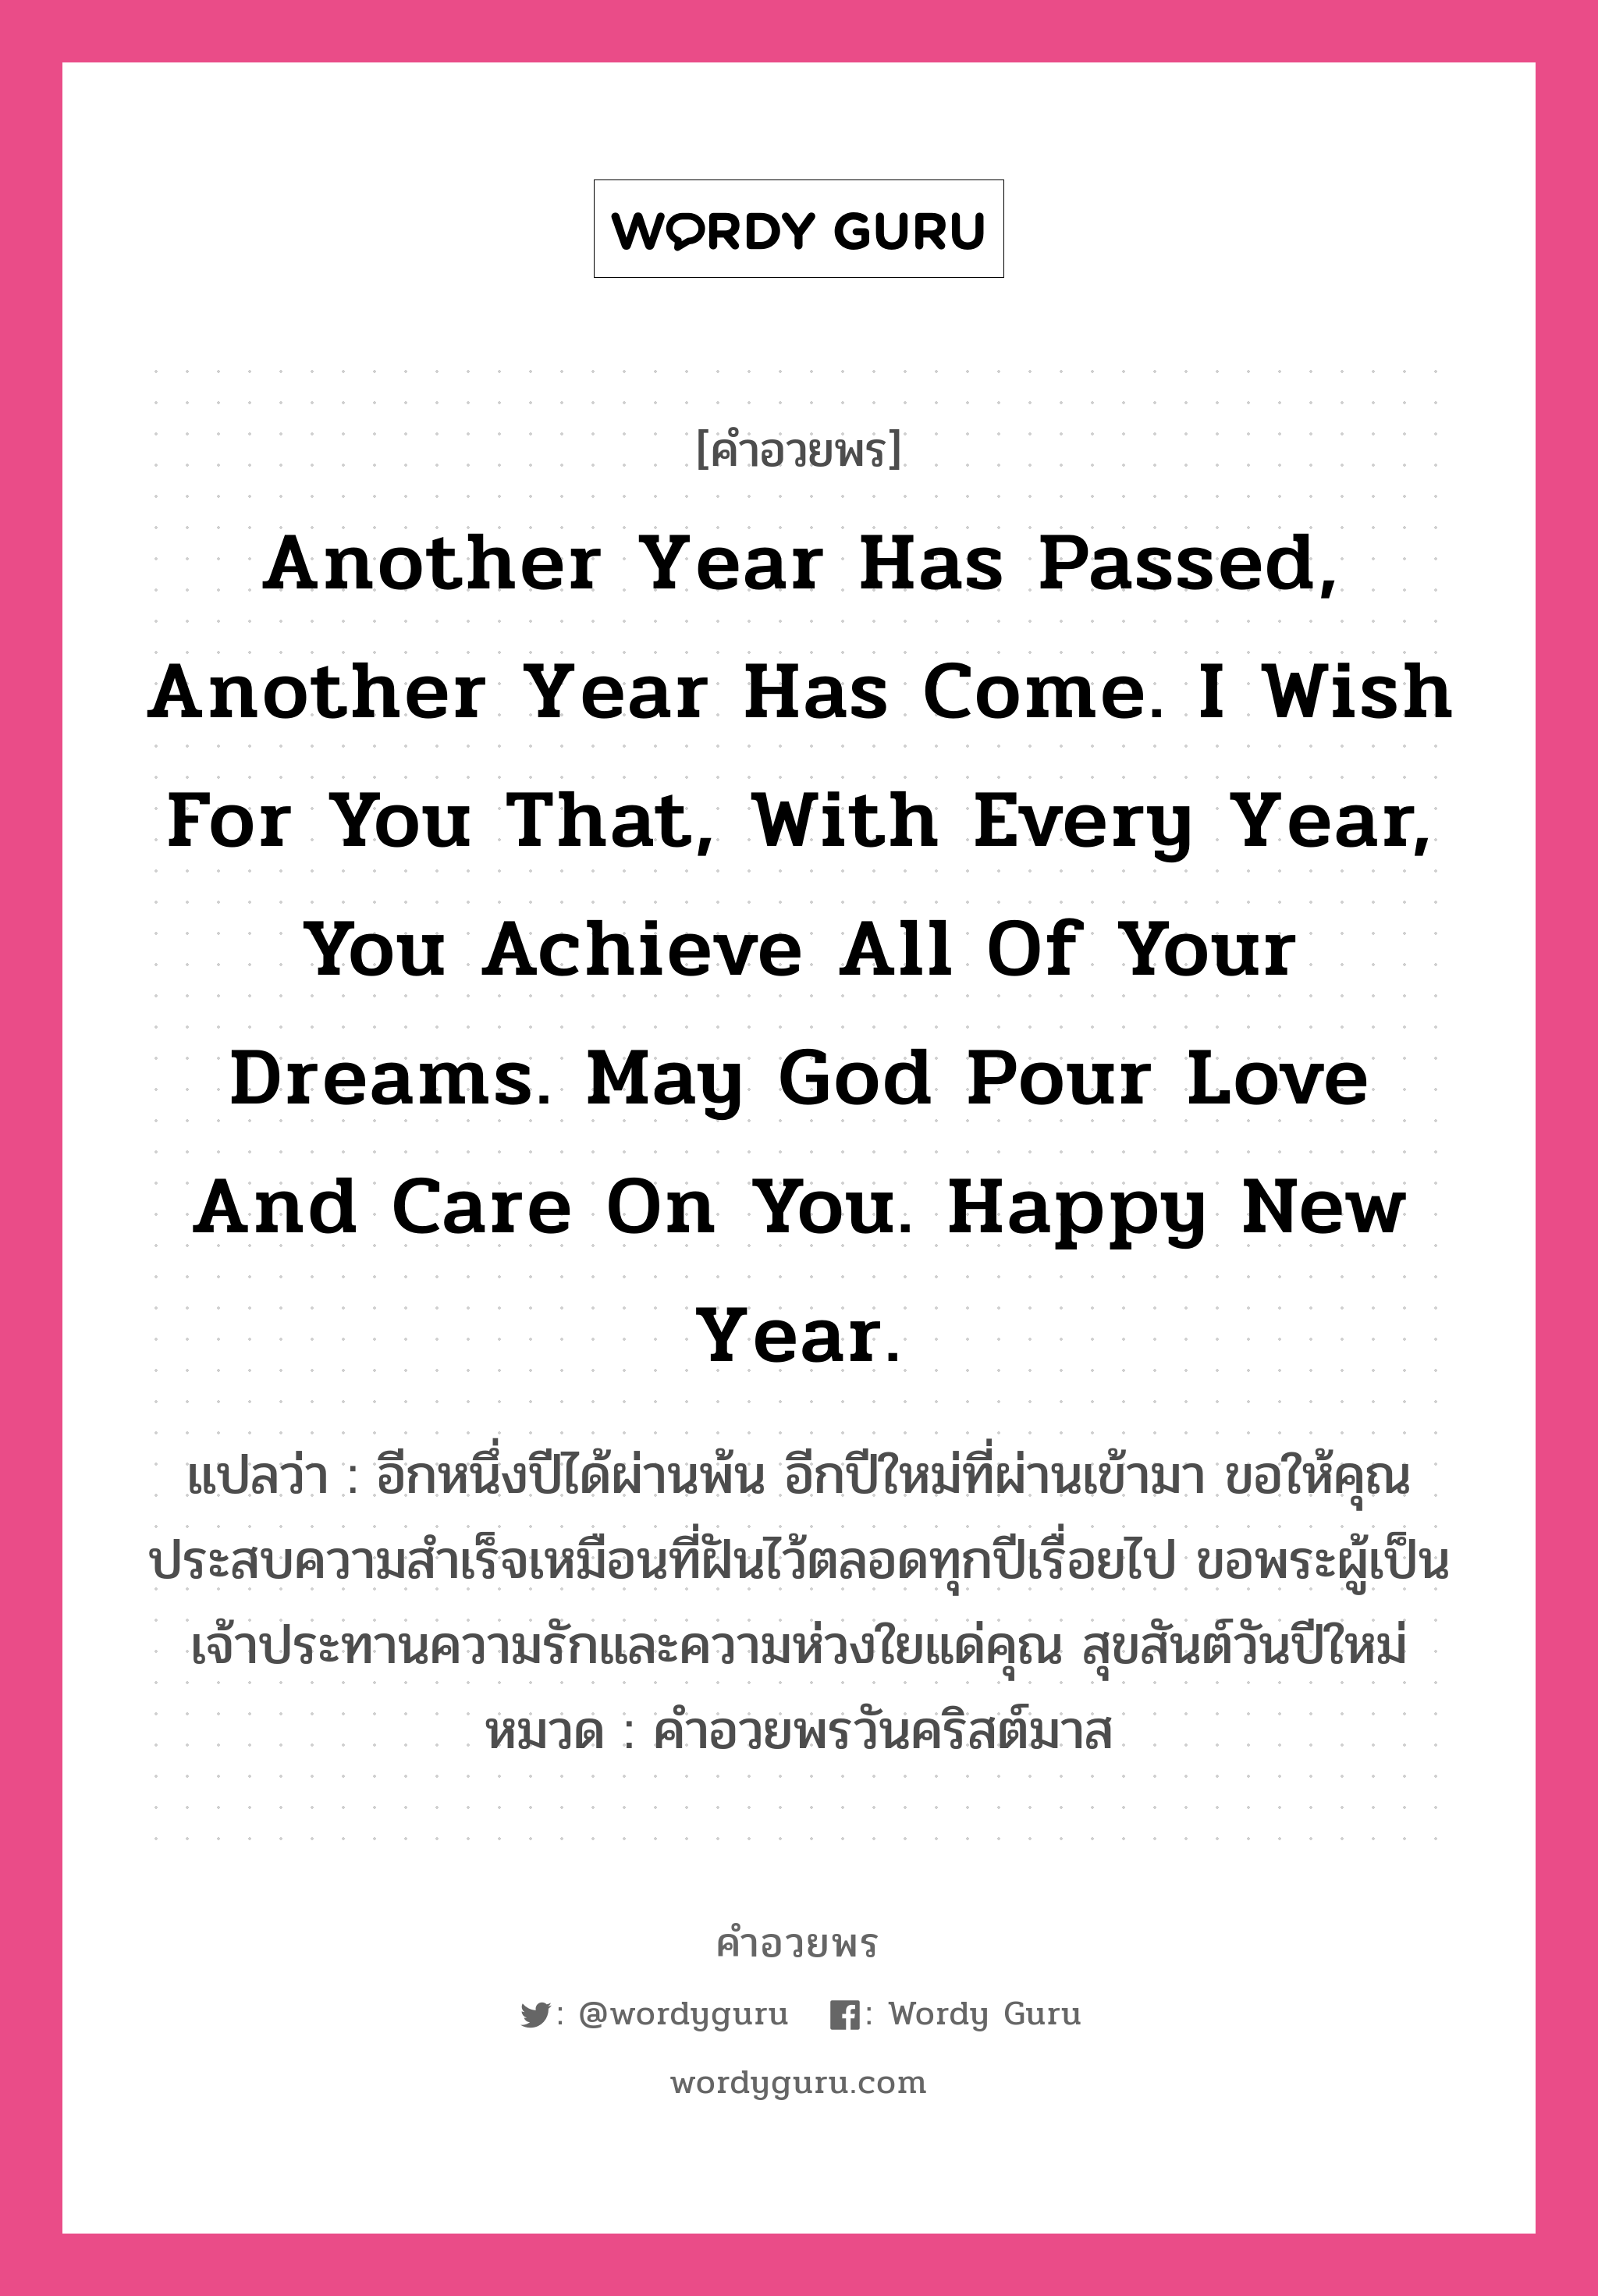 คำอวยพร Another year has passed, another year has come. I wish for you that, with every year, you achieve all of your dreams. May God pour love and care on you. Happy New Year. คืออะไร?, แปลว่า อีกหนึ่งปีได้ผ่านพ้น อีกปีใหม่ที่ผ่านเข้ามา ขอให้คุณประสบความสำเร็จเหมือนที่ฝันไว้ตลอดทุกปีเรื่อยไป ขอพระผู้เป็นเจ้าประทานความรักและความห่วงใยแด่คุณ สุขสันต์วันปีใหม่ หมวด คำอวยพรวันคริสต์มาส หมวด คำอวยพรวันคริสต์มาส